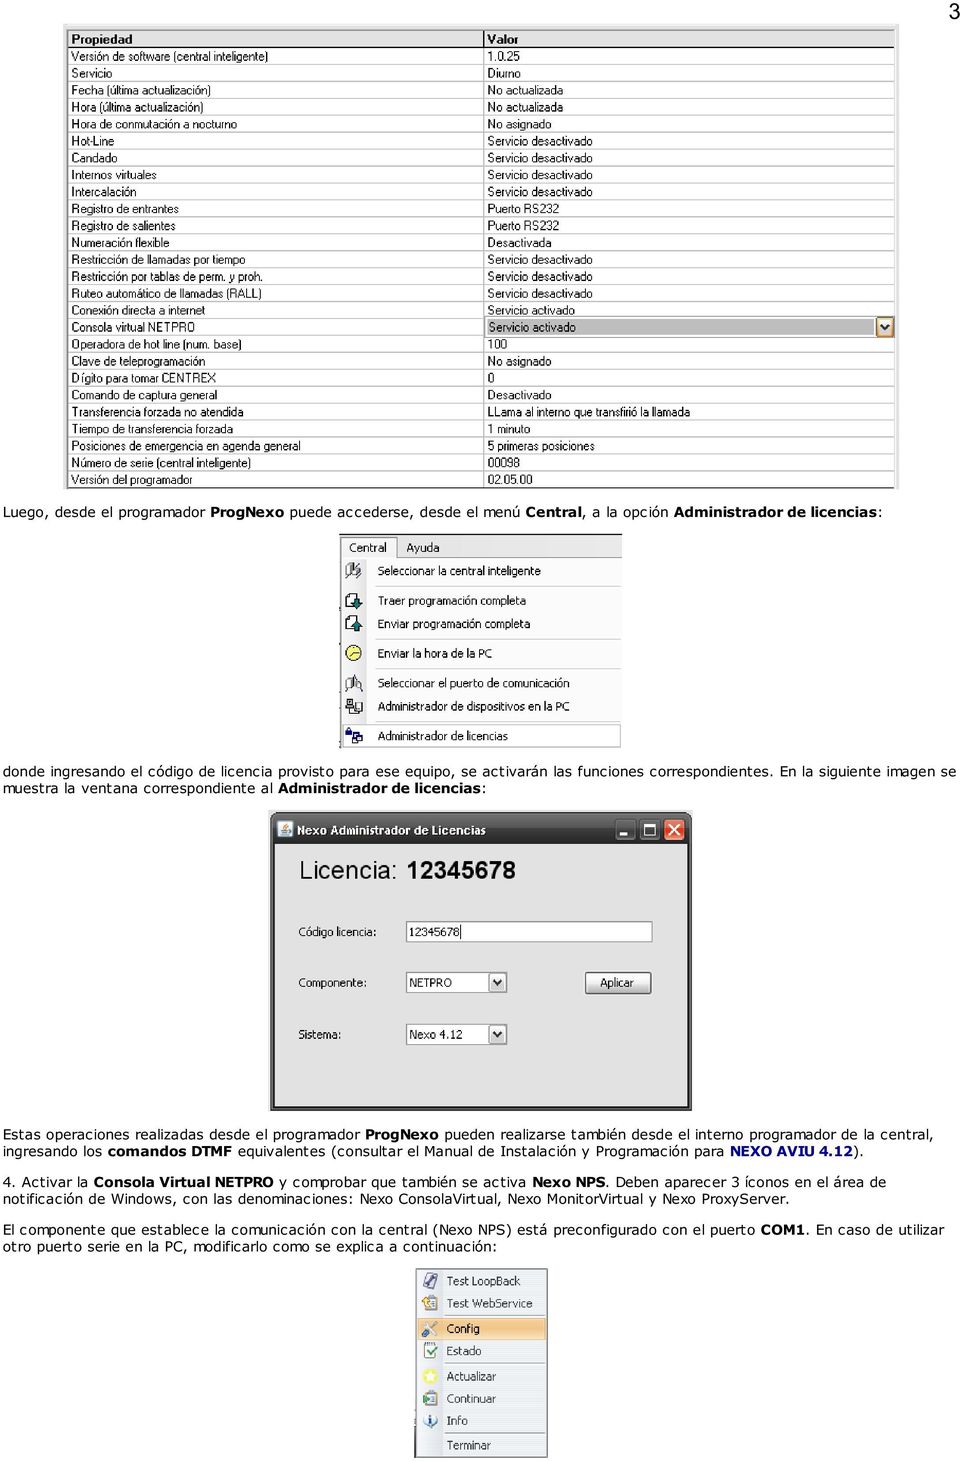 En la siguiente imagen se muestra la ventana correspondiente al Administrador de licencias: Estas operaciones realizadas desde el programador ProgNexo pueden realizarse también desde el interno